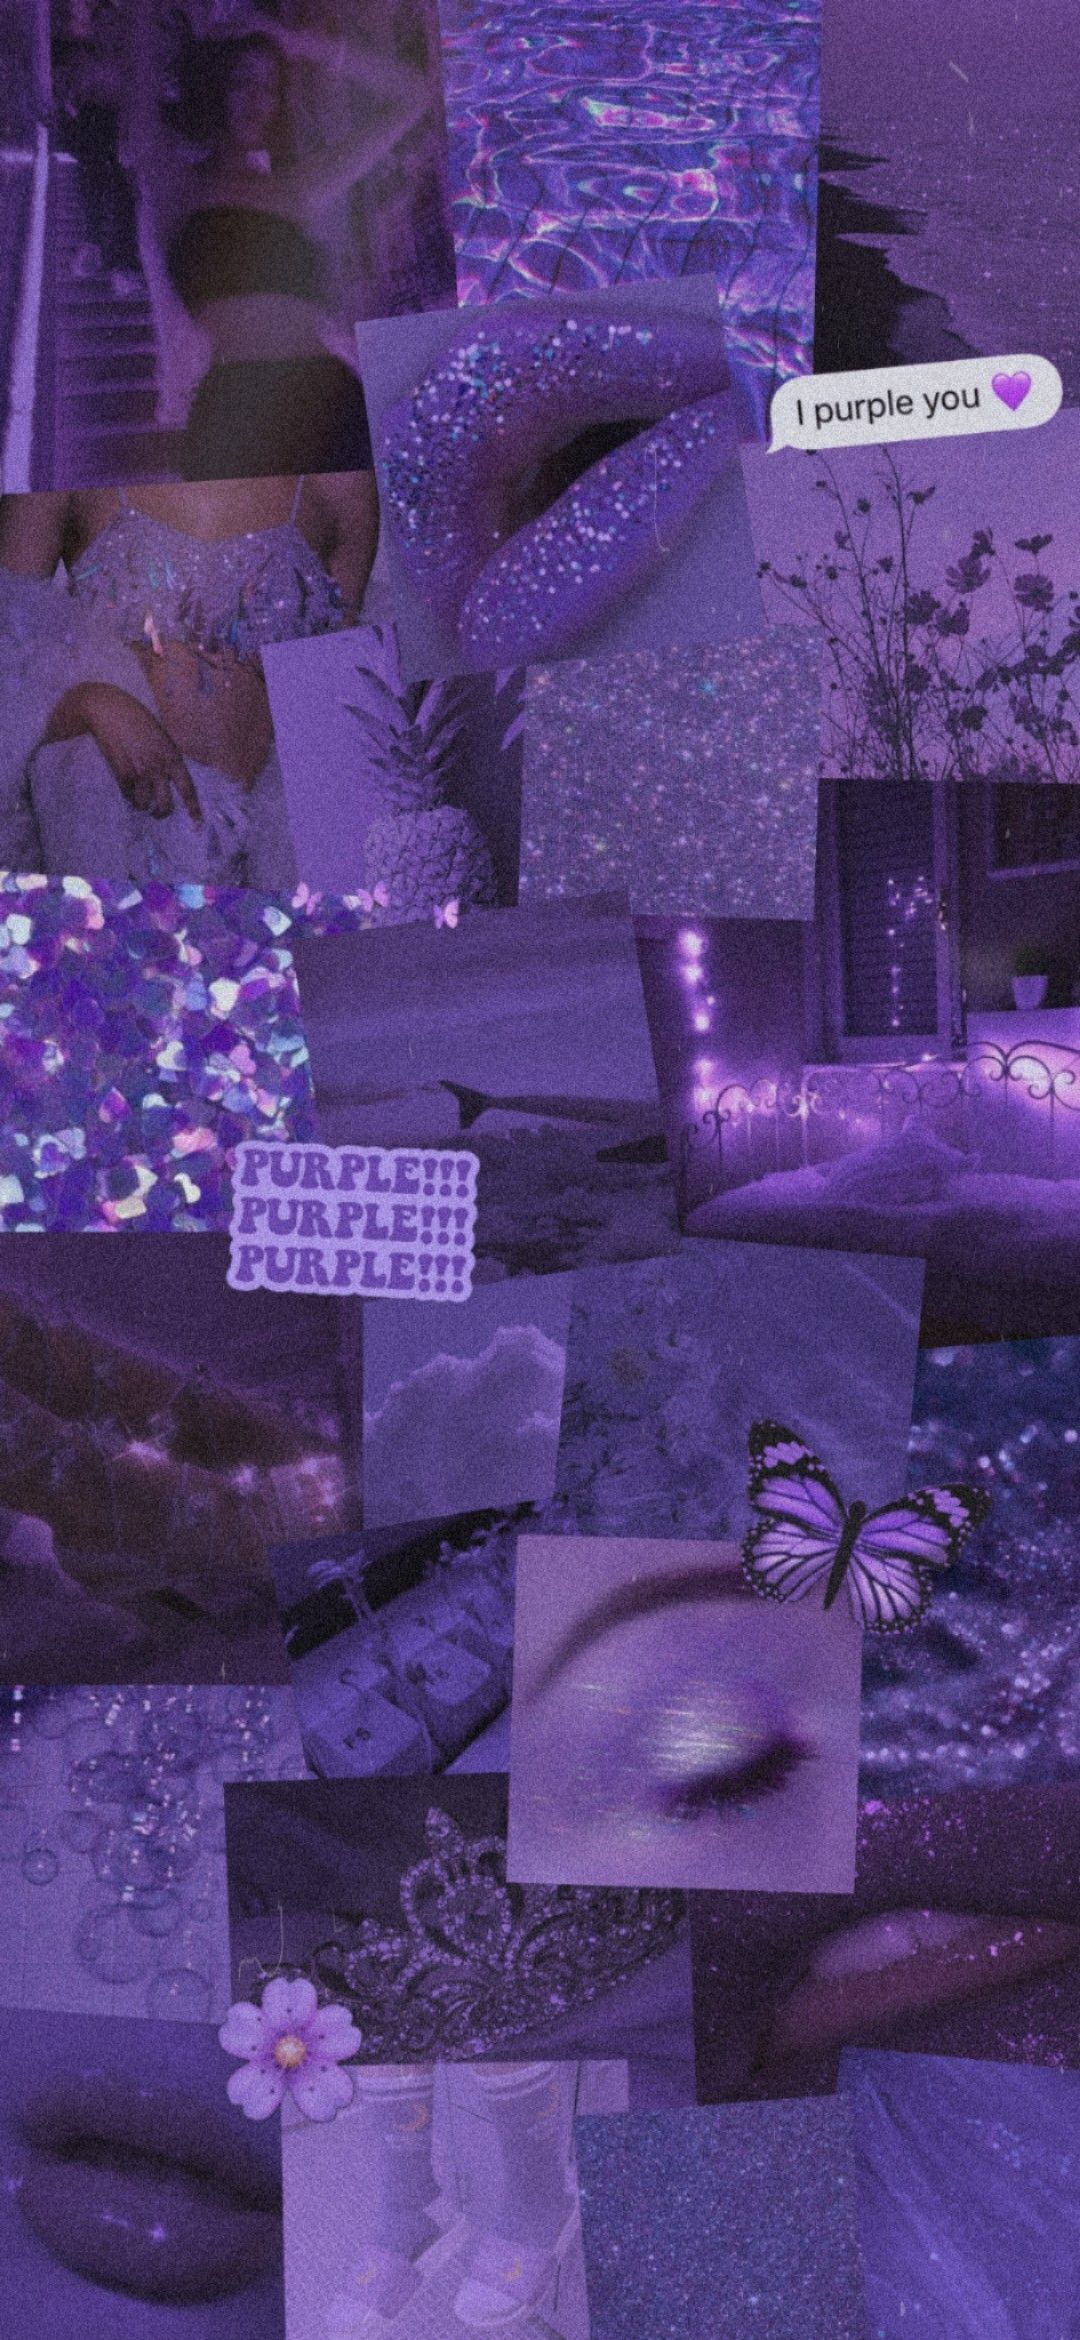 purple aesthetic wallpaper. Purple glitter wallpaper, Purple aesthetic background, Purple flowers wallpaper